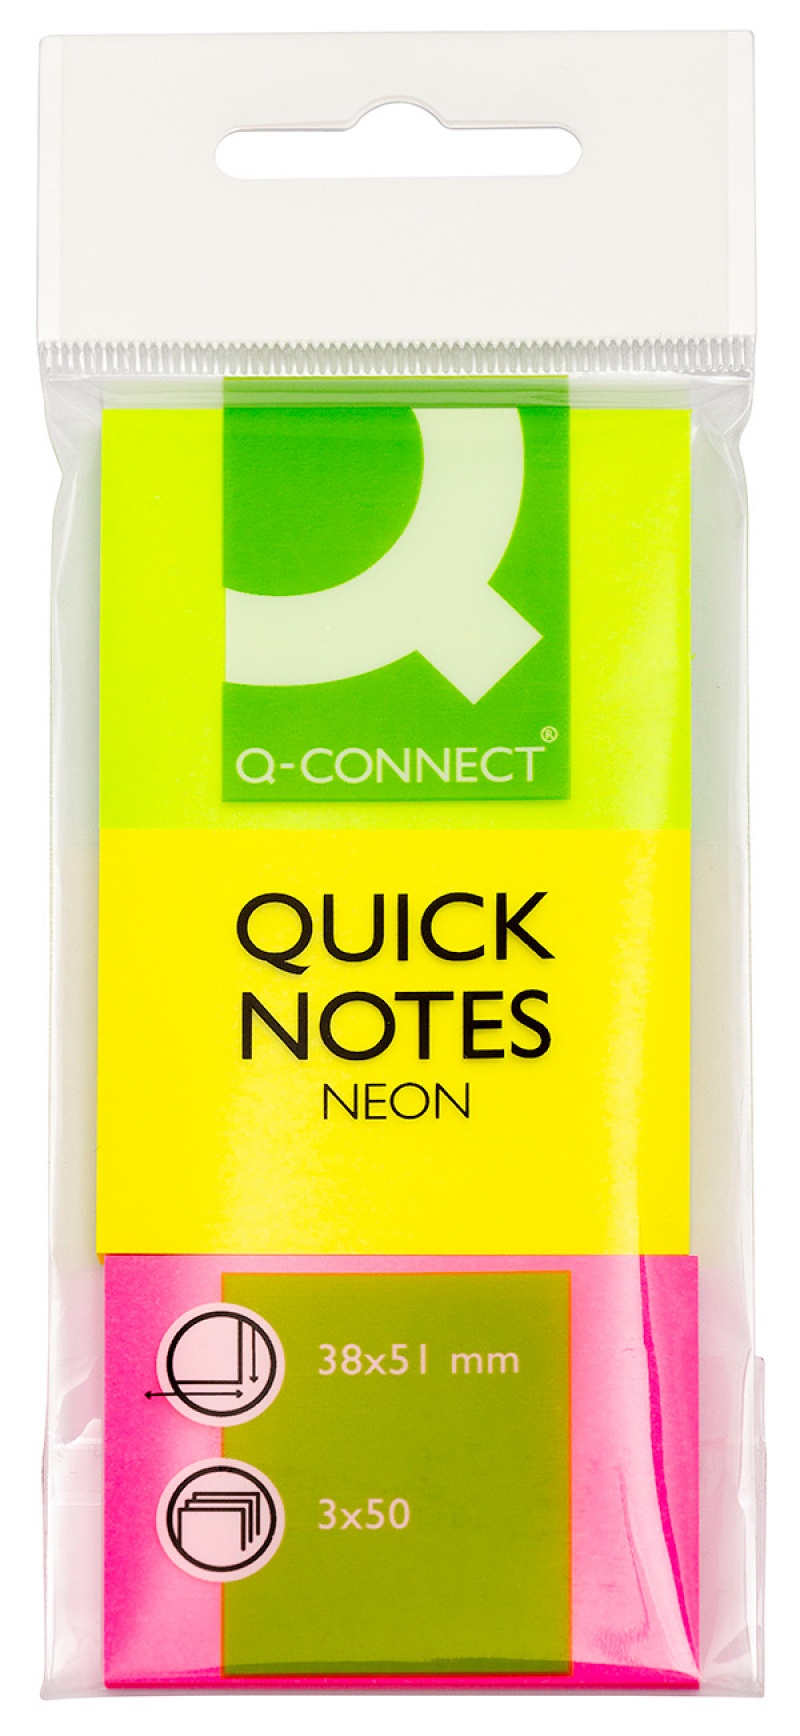 Bloczek samoprzylepny Q-CONNECT, 38x51mm, 3x50 kart., neon, mix kolorów - zdjęcie (2